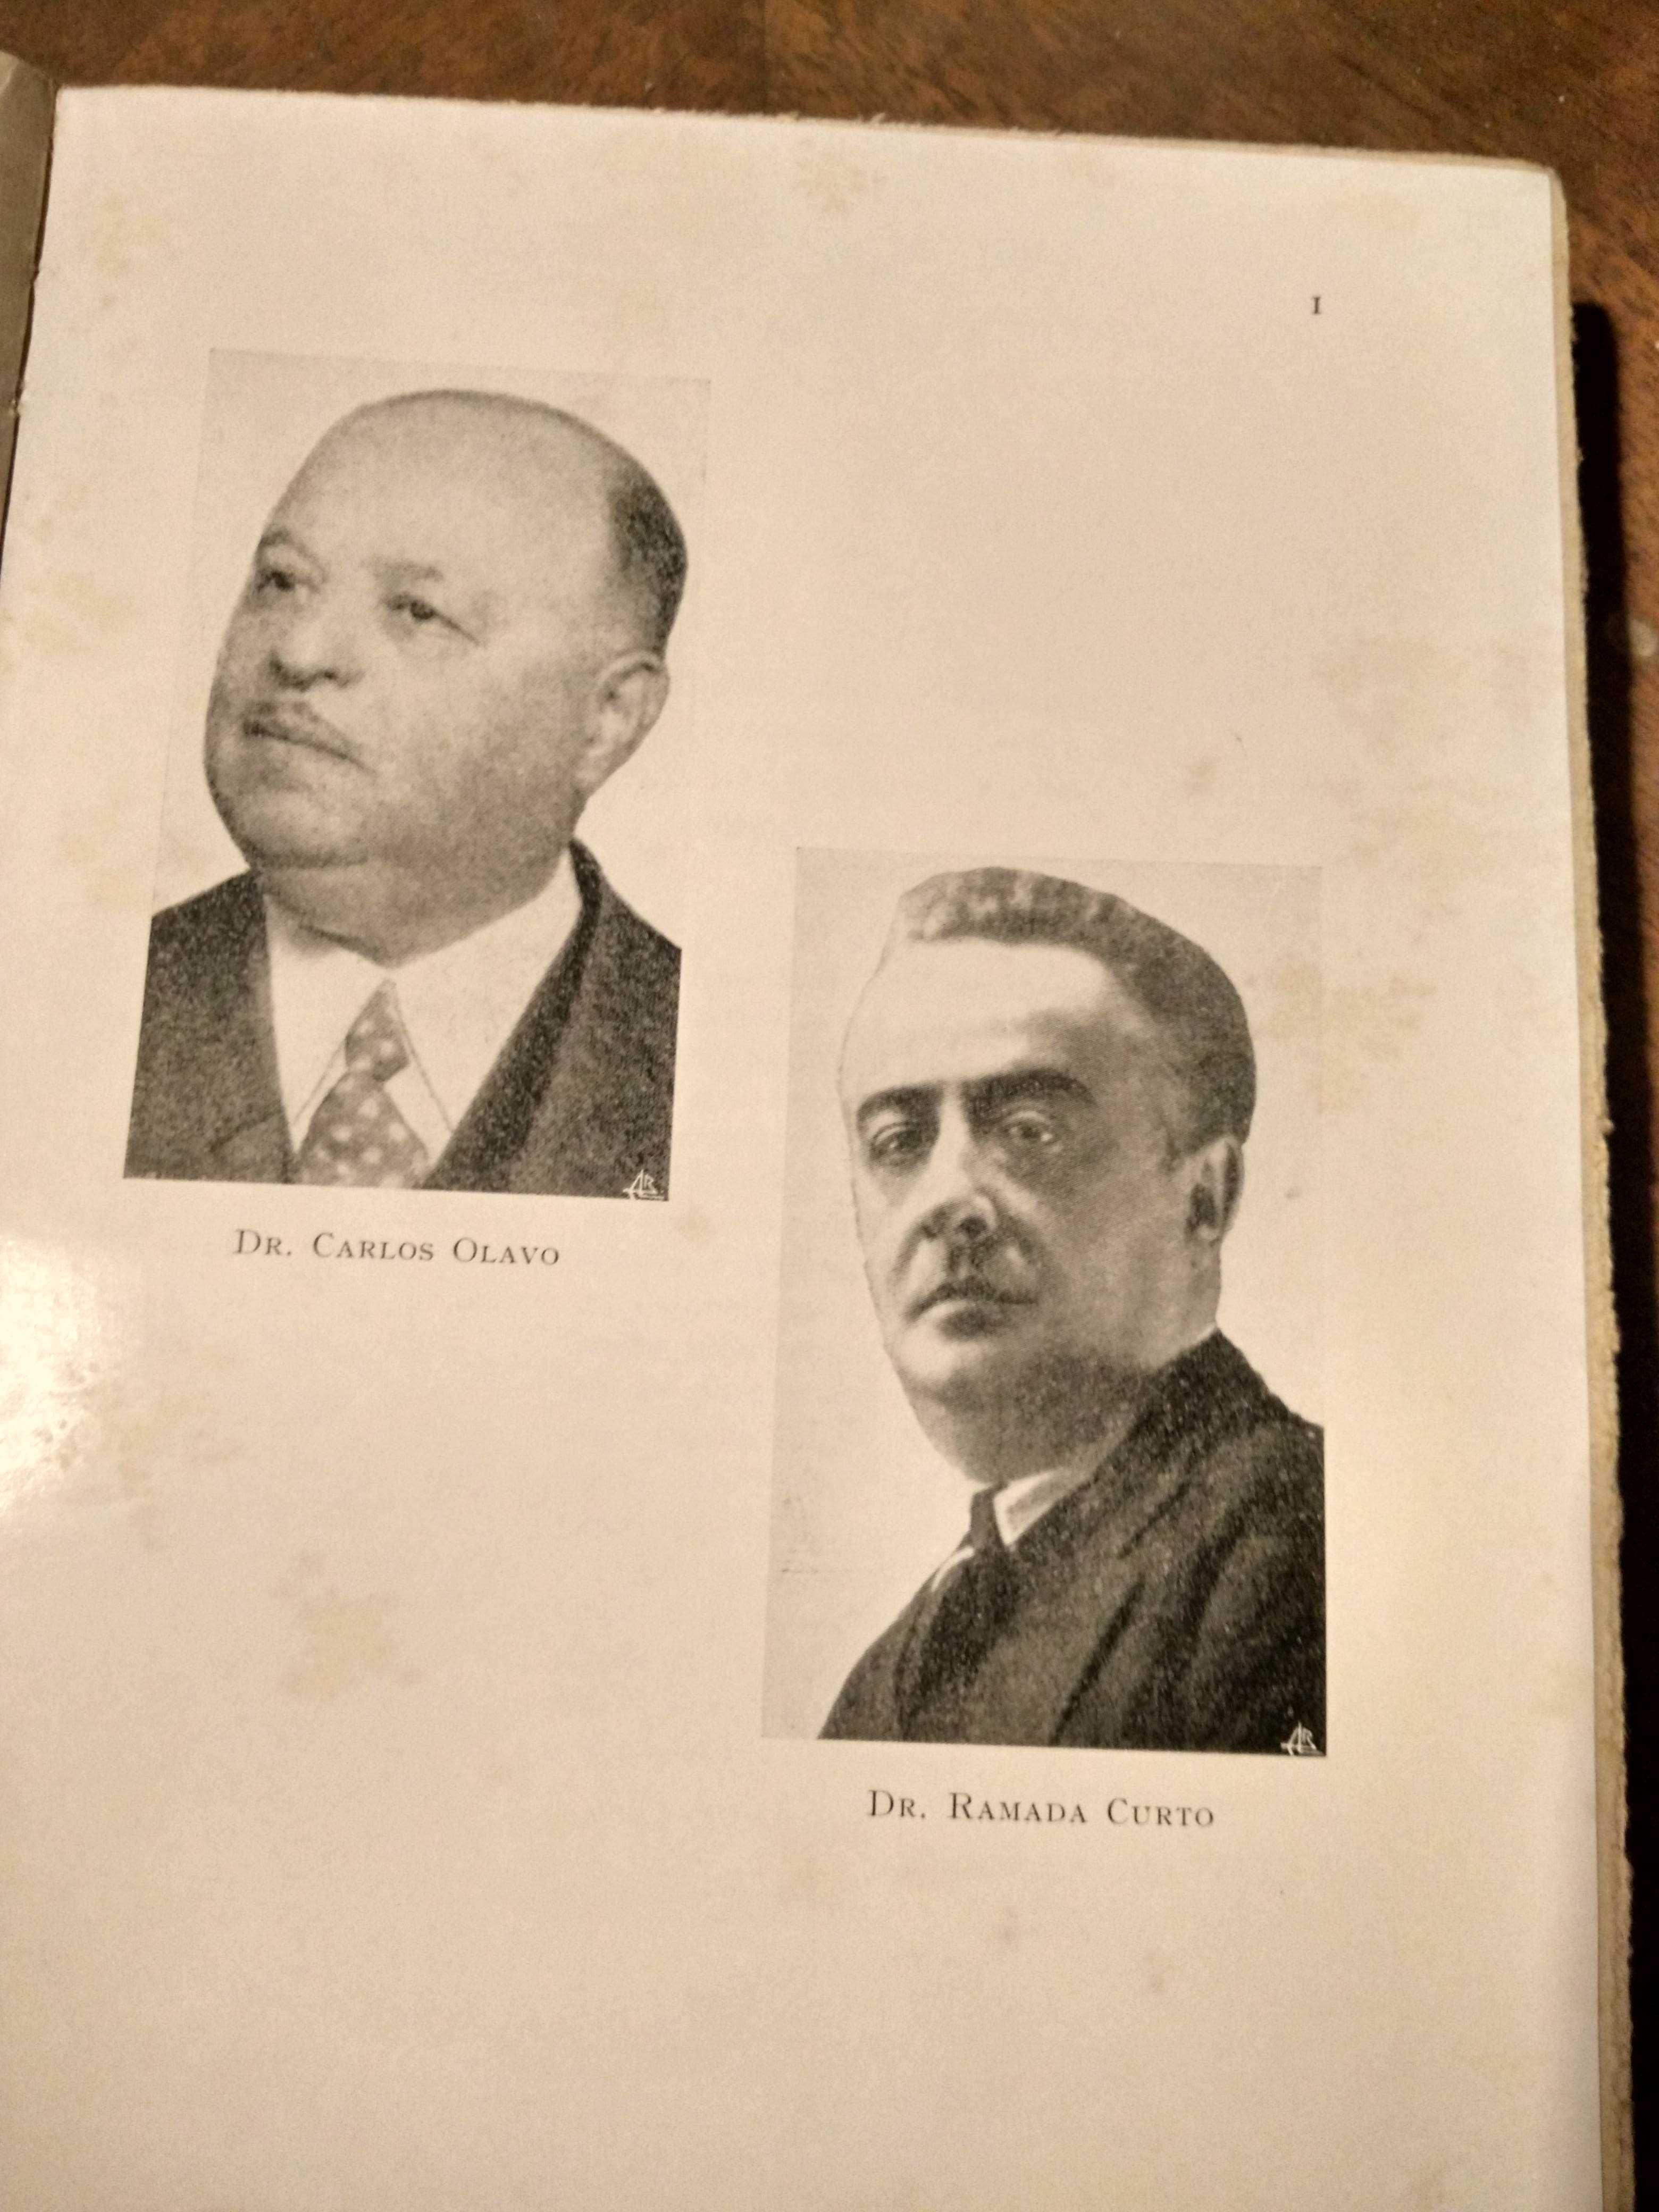 História da Greve Académica de 1907 - 1.ª edição - Xavier, Alberto